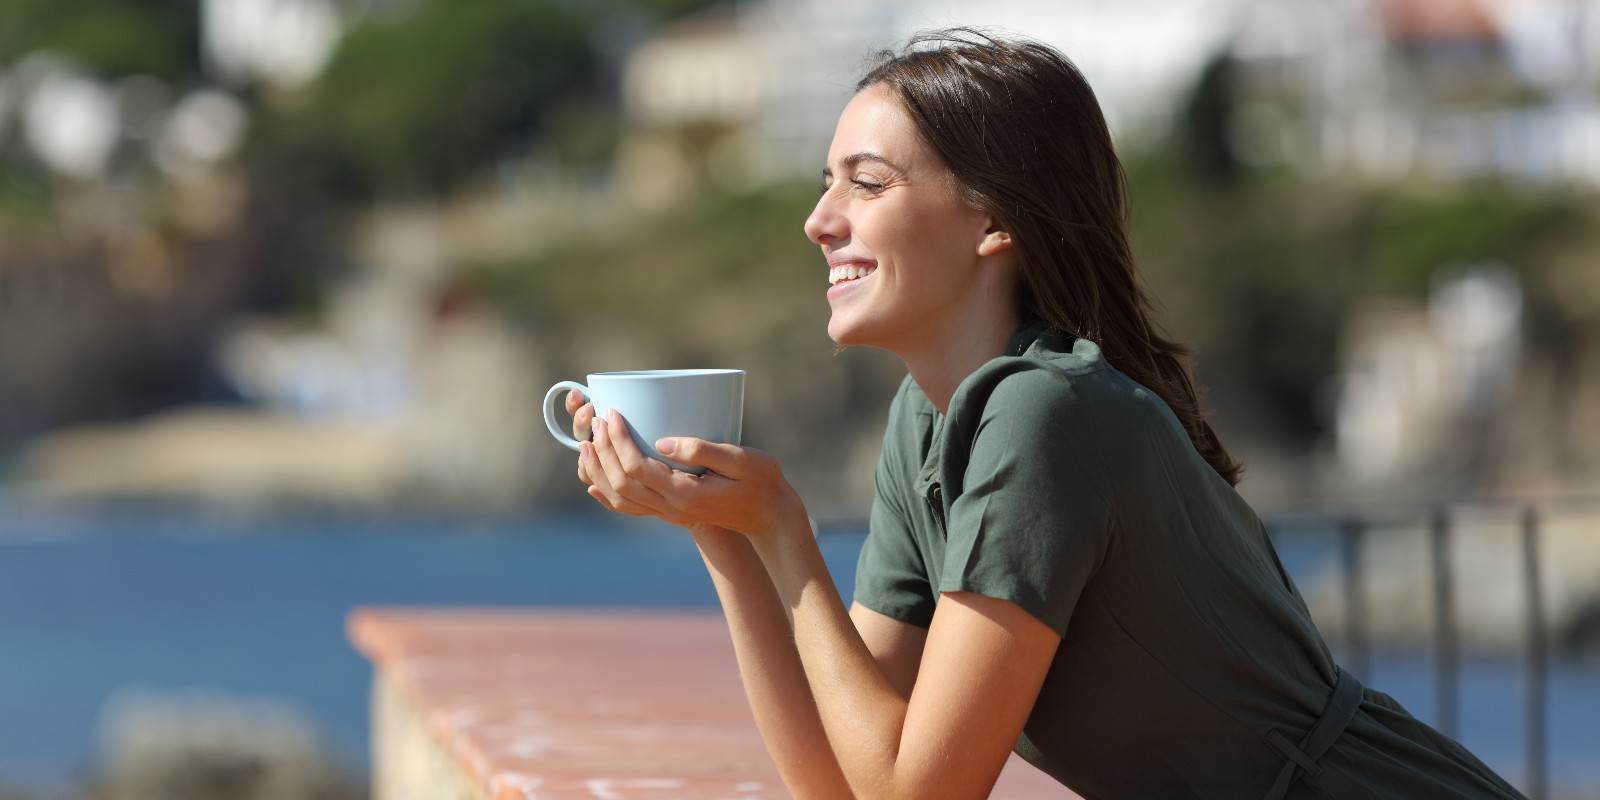 Eine junge Frau lehnt sich über einen Balkon und trinkt Kaffee. Es ist das Titelbild zum Blogbeitrag "Nerven und Psyche" aus komplementärmedizinischer Sicht.